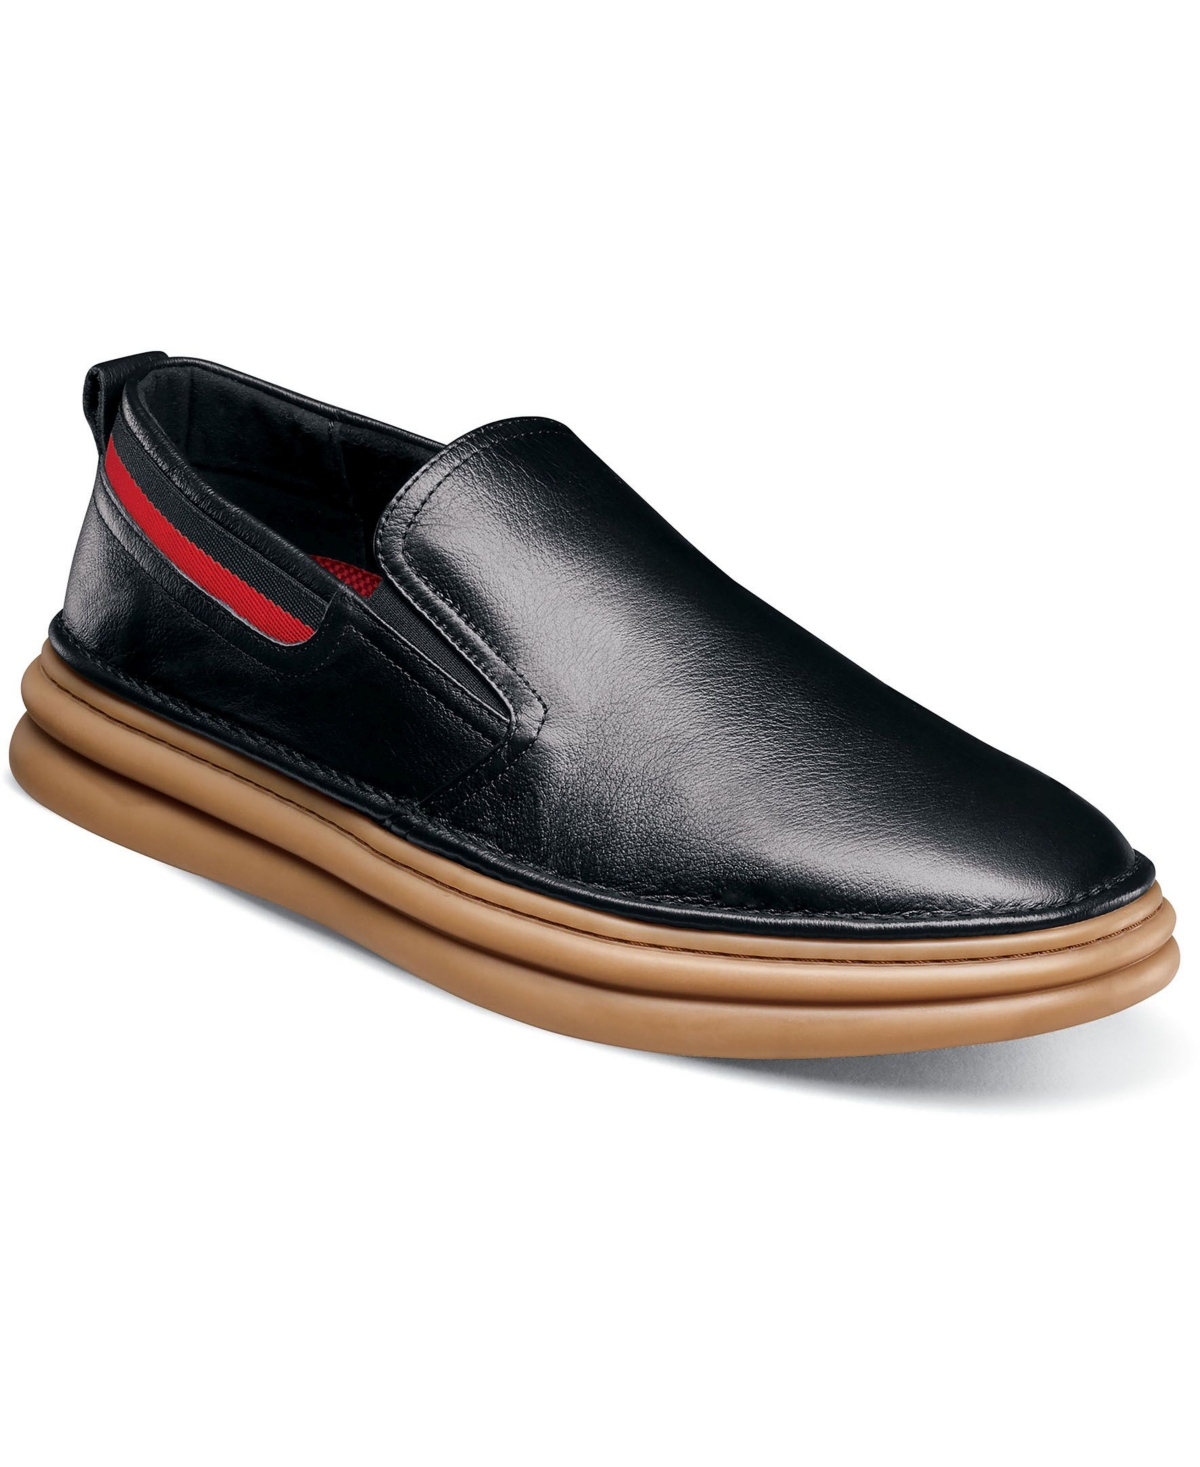 Men's Delmar Plain Toe Slip On Shoes - Black